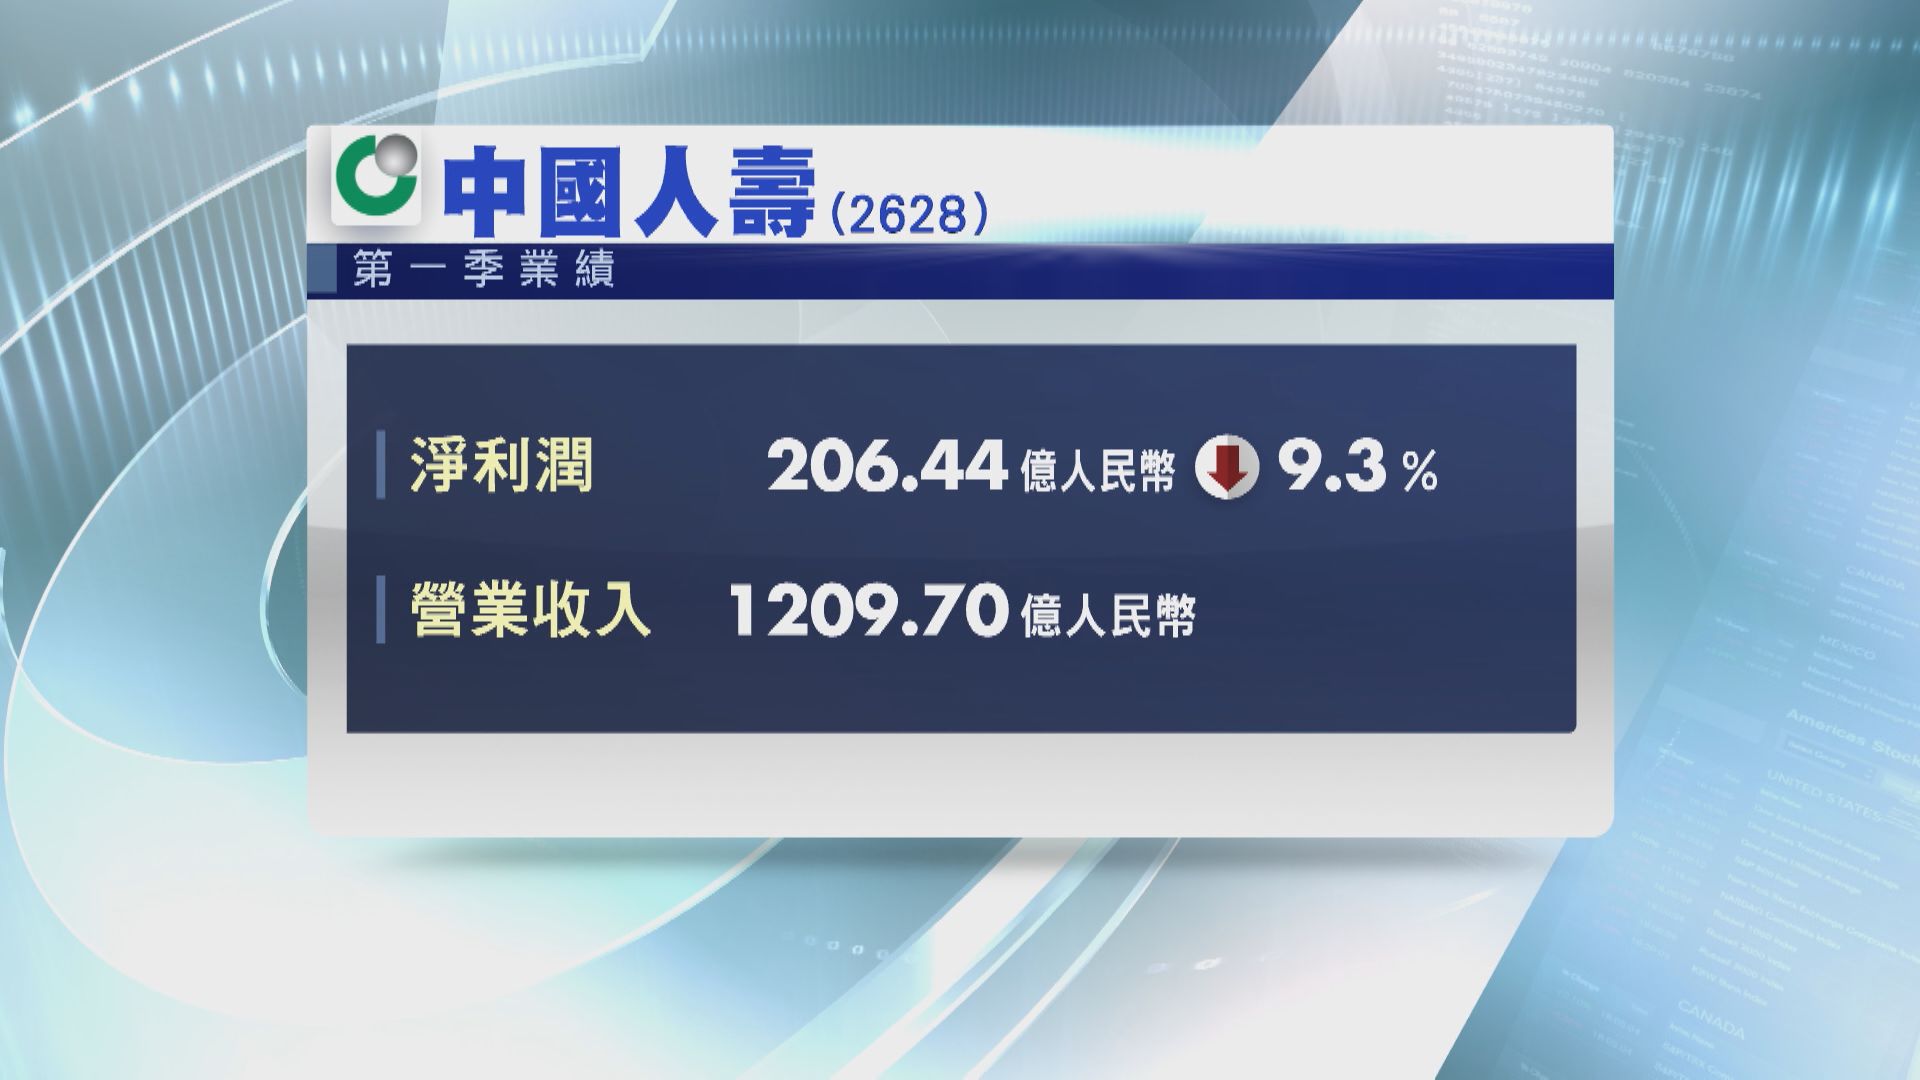 【藍籌業績】國壽首季少賺9% 新業務價值升26.3%近年新高